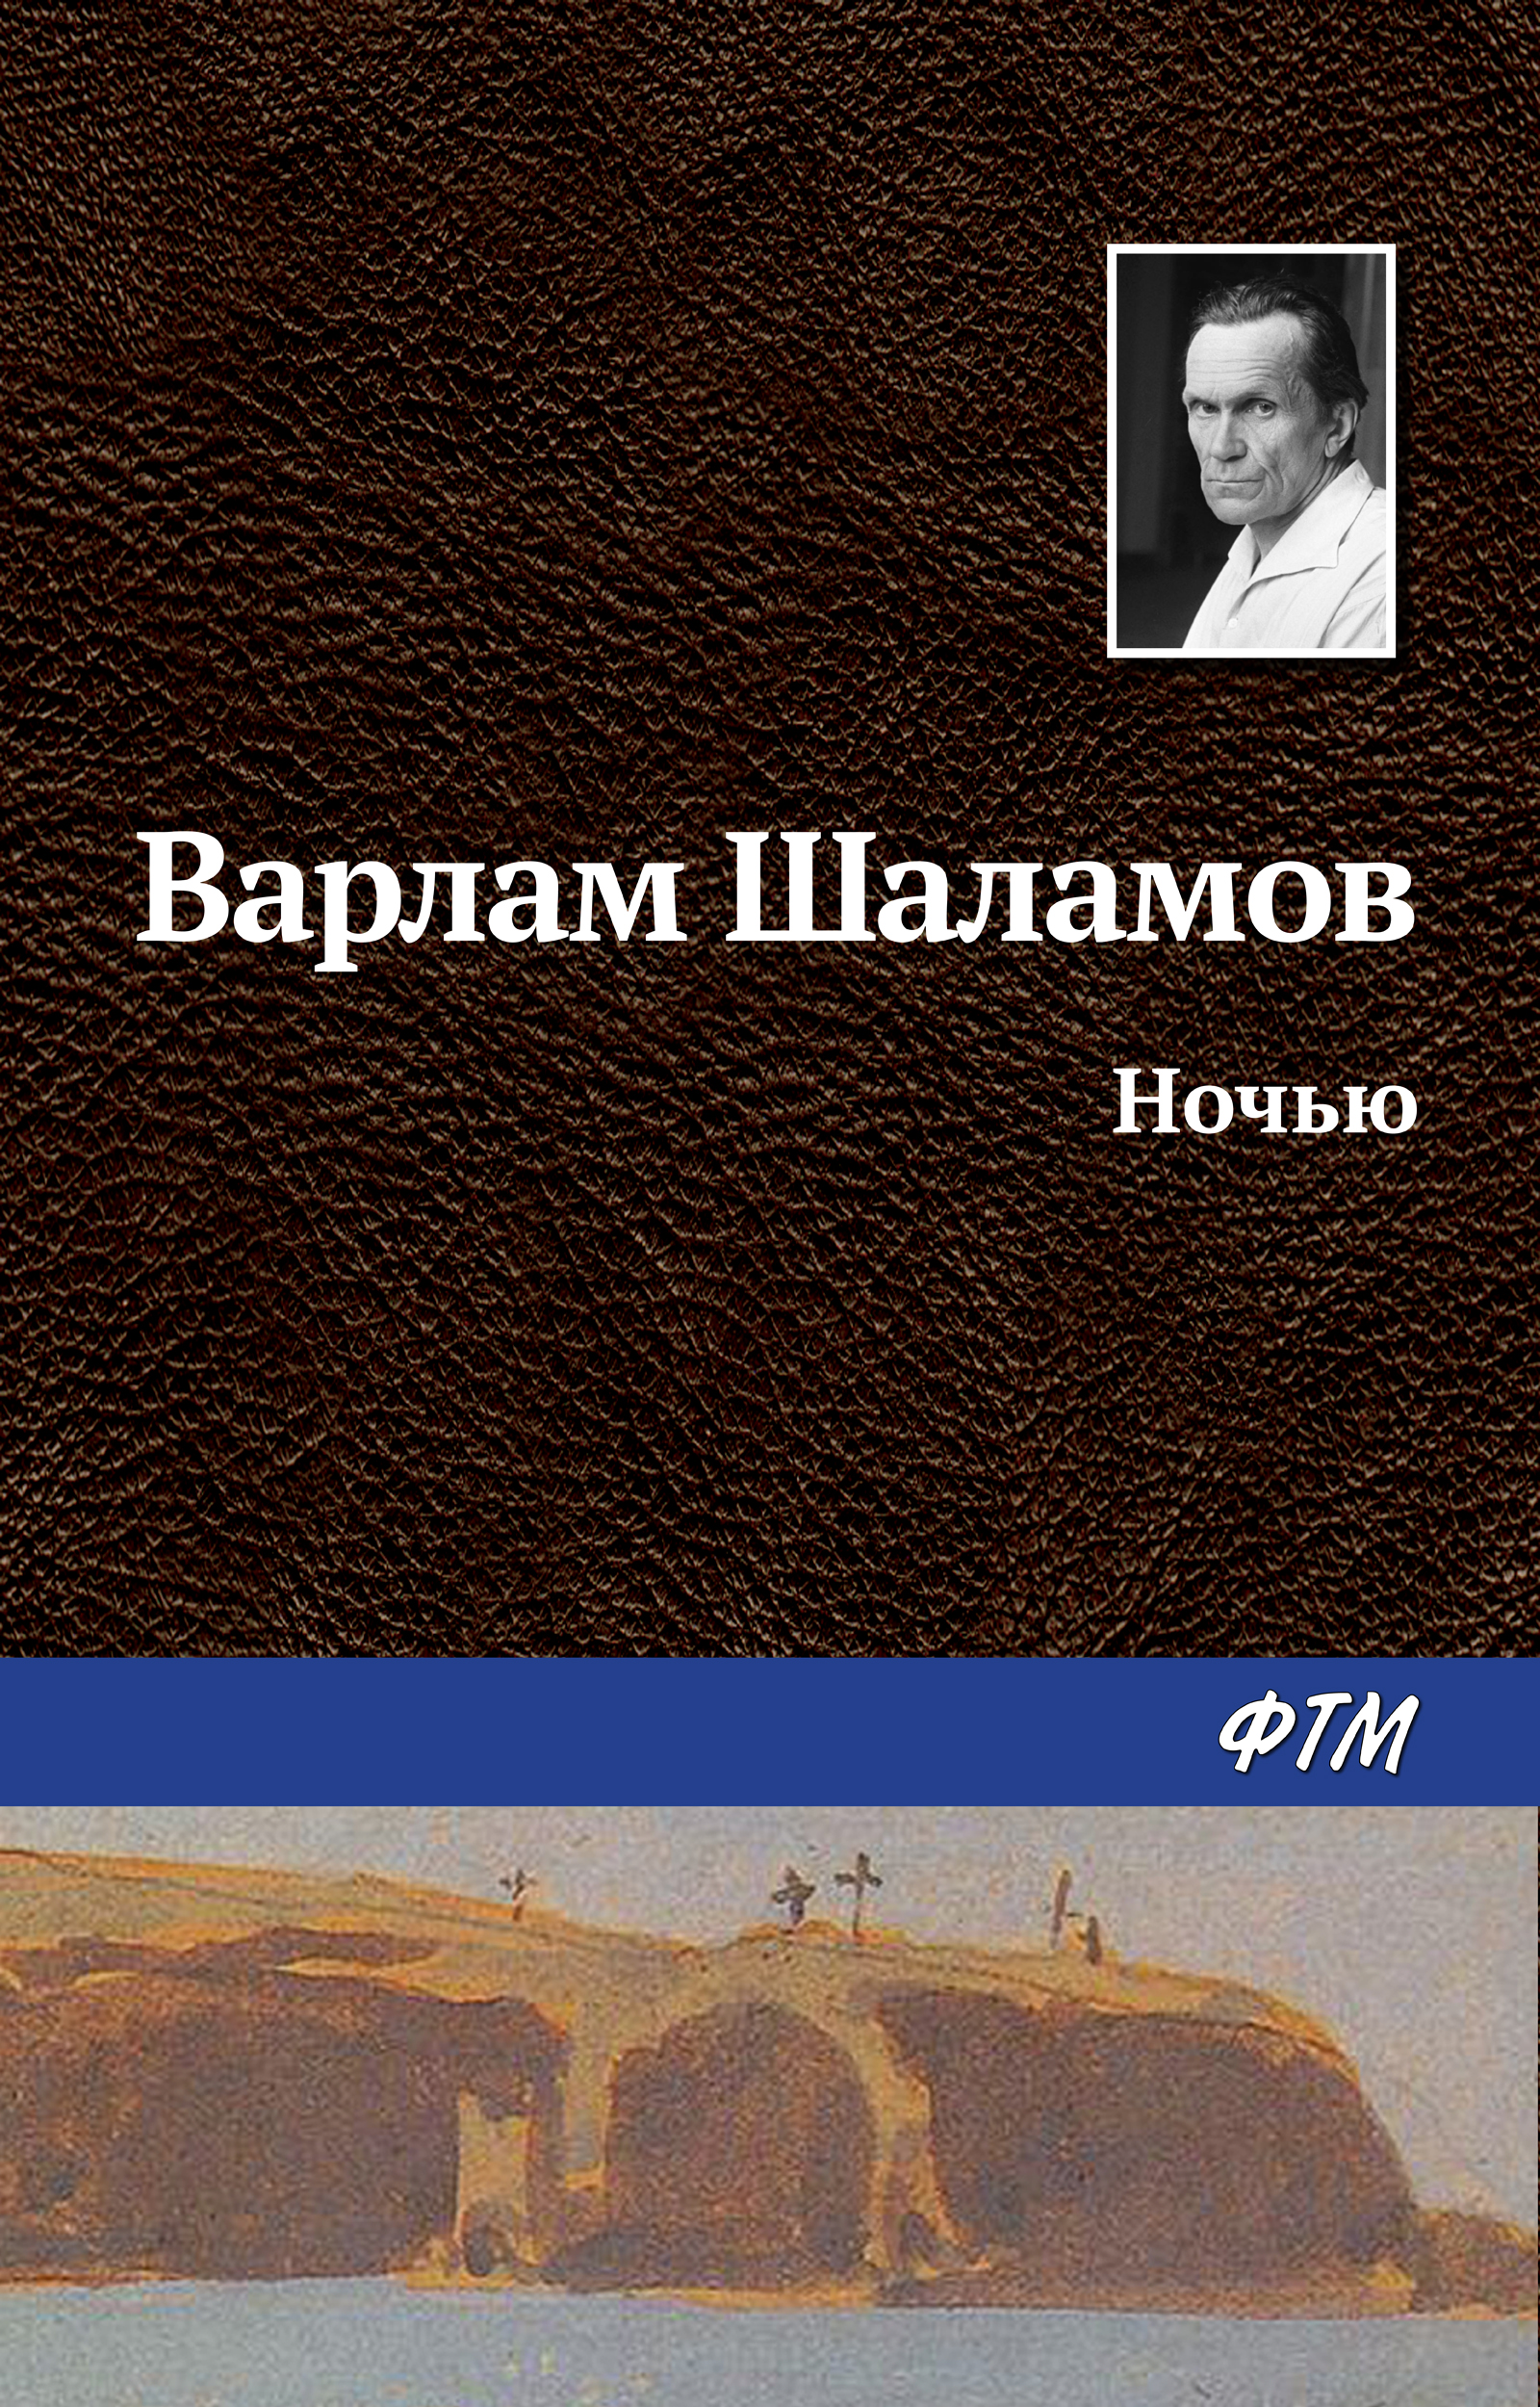 Книга Ночью из серии , созданная Варлам Шаламов, может относится к жанру Русская классика. Стоимость электронной книги Ночью с идентификатором 629845 составляет 19.00 руб.